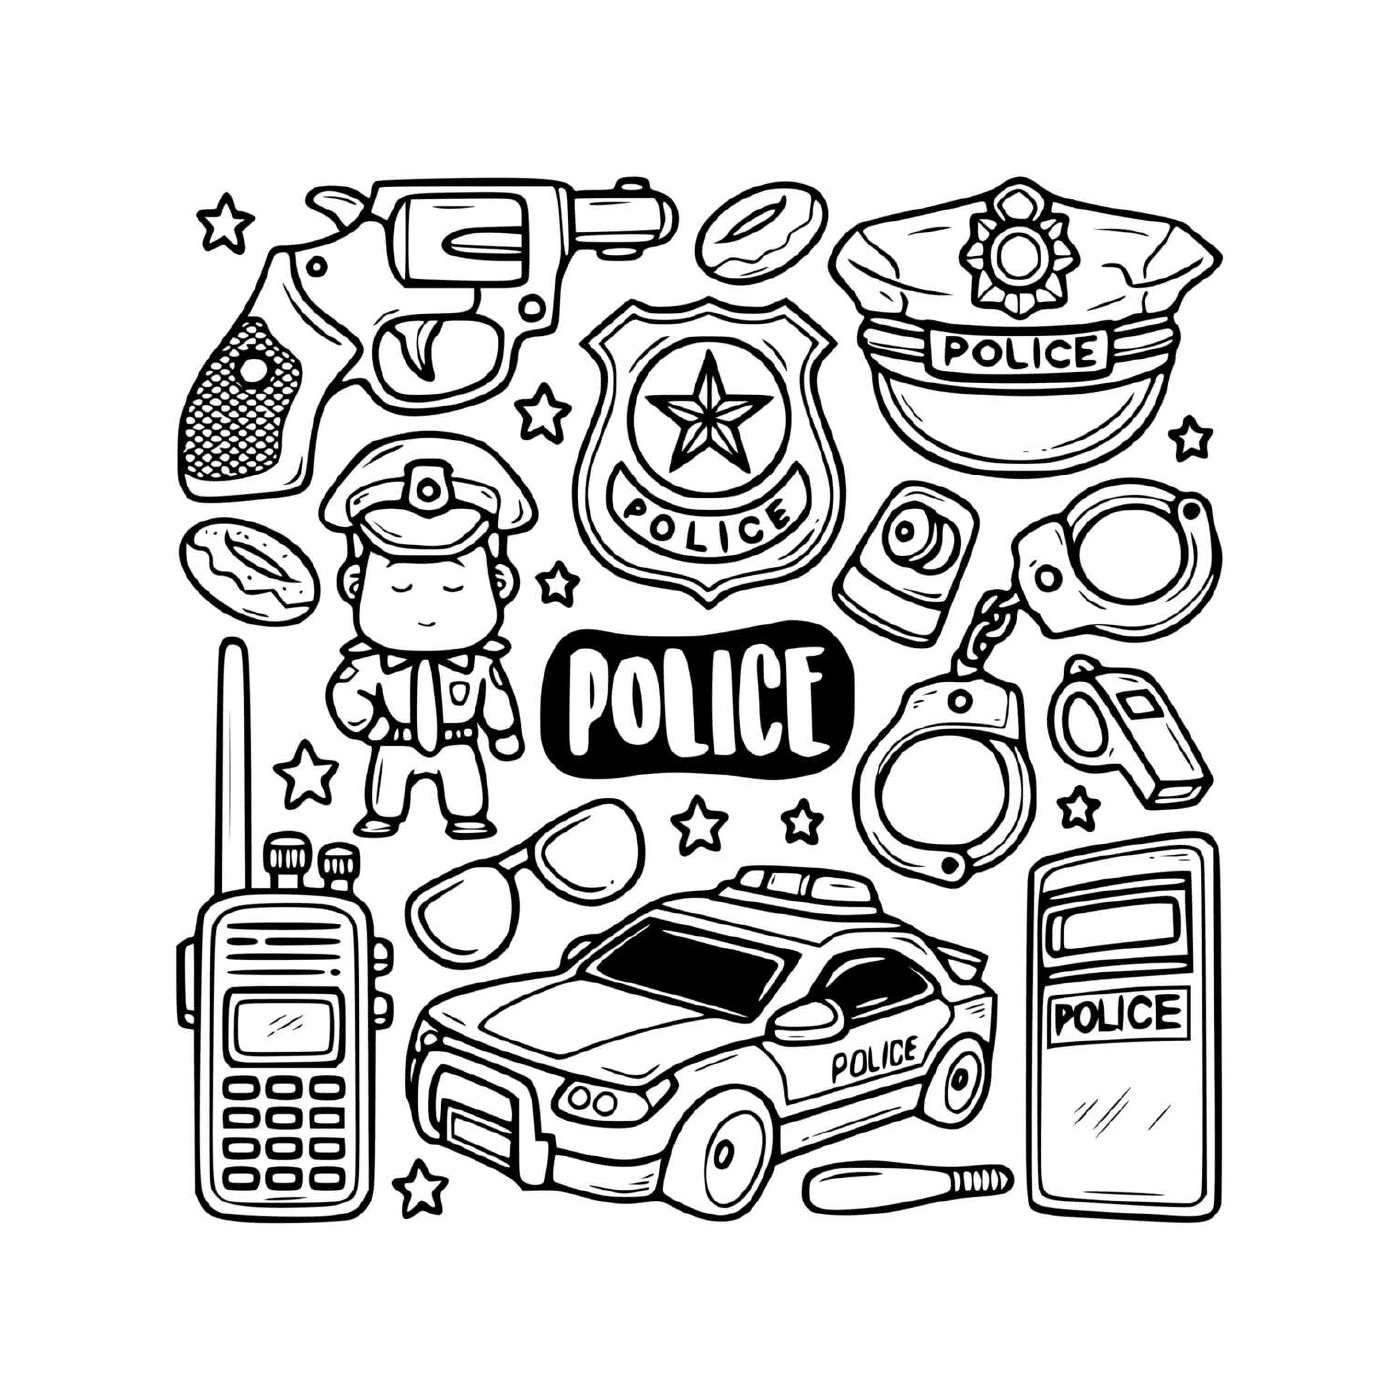  Iconos de la policía en blanco y negro 